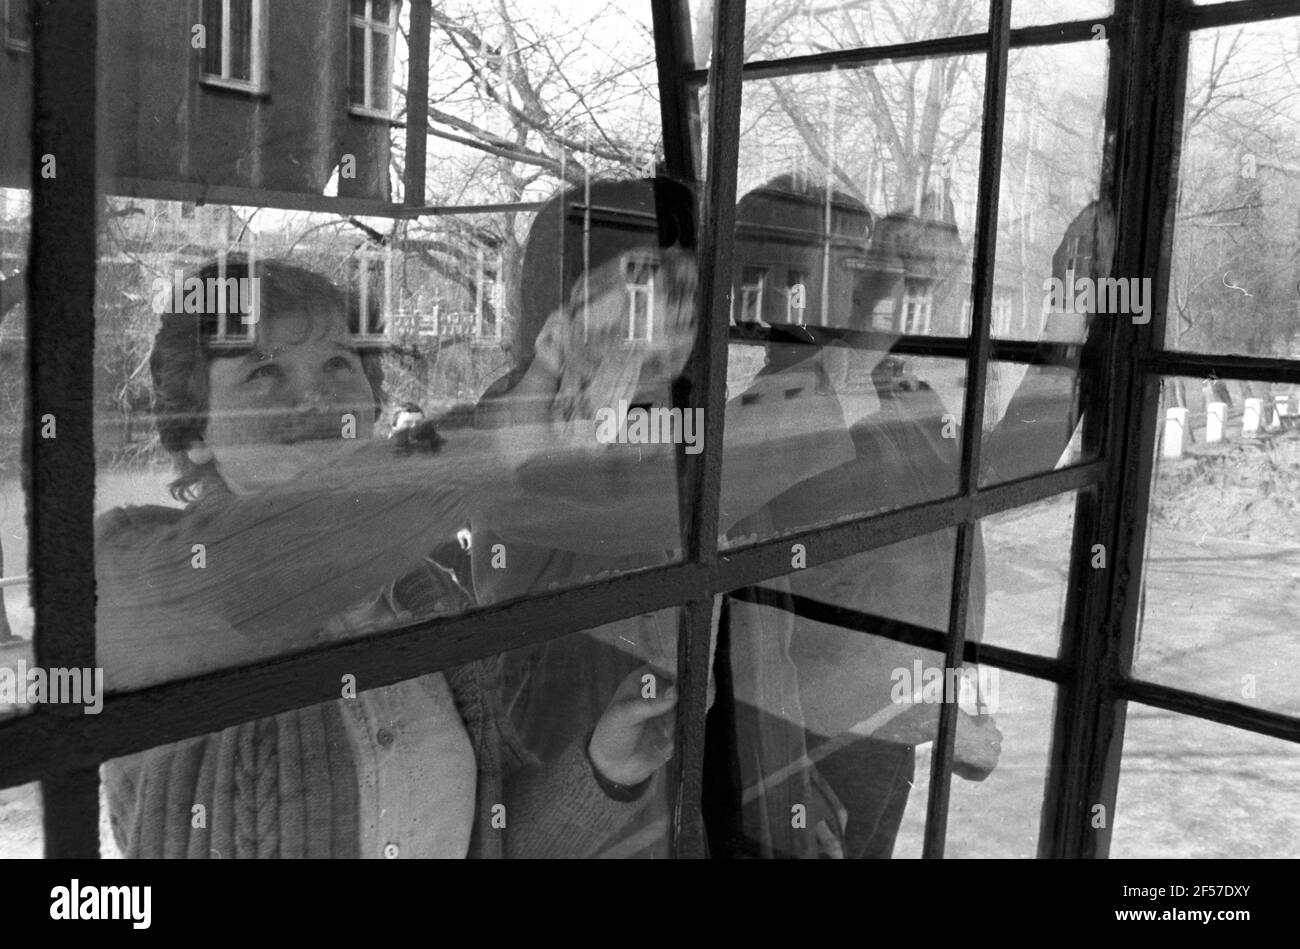 15 febbraio 1982, Sassonia, Delitzsch: Gli allievi di una scuola secondaria politecnica (POS) aiutano a pulire le finestre a Delitzsch nella primavera 1982. La data esatta della foto non è nota. Foto: Volkmar Heinz/dpa-Zentralbild/ZB Foto Stock